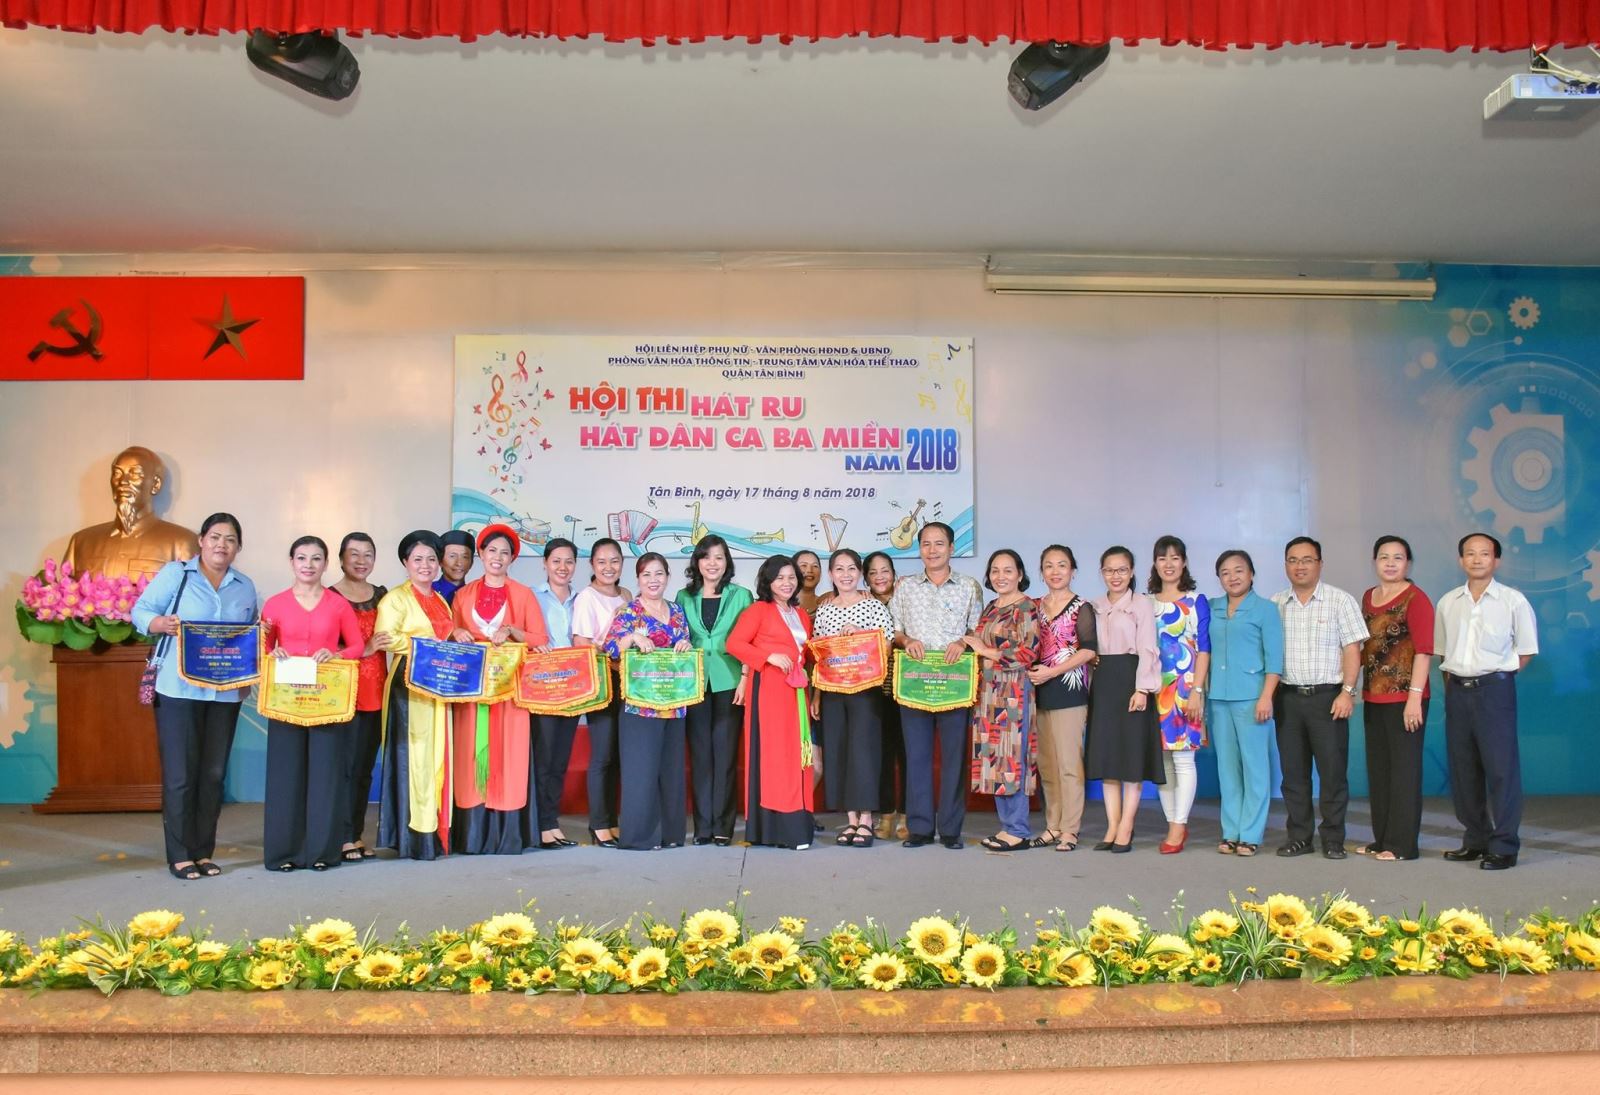 Liên hoan Hát ru, hát dân ca 03 miền Bắc - Trung - Nam quận Tân Bình lần 2 - năm 2018.